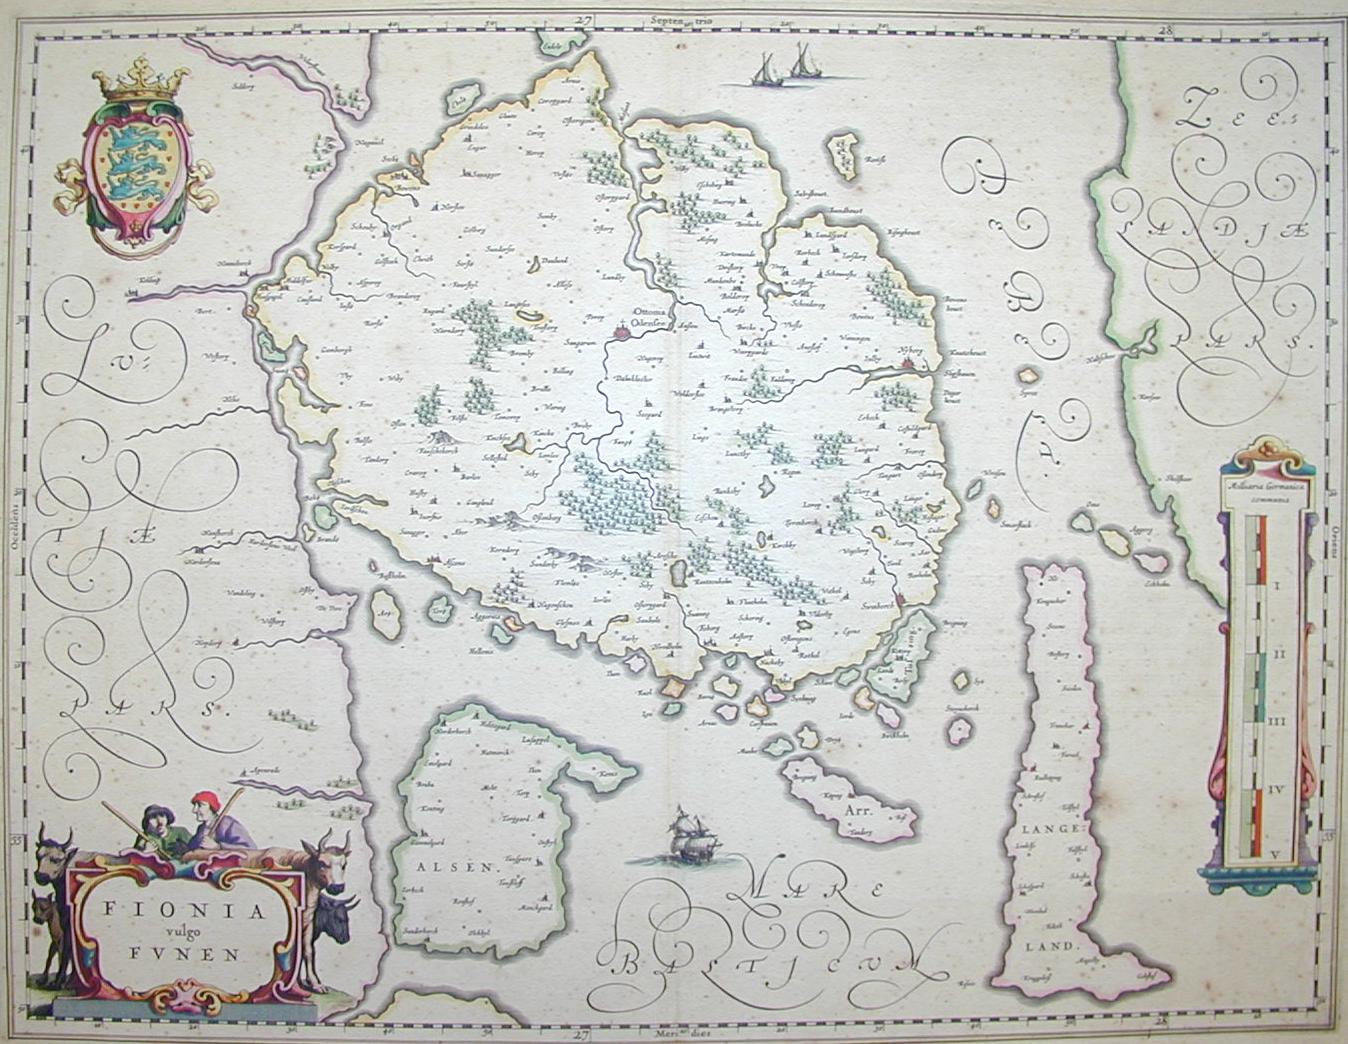 Fionia (Isole dell'arcipelago danese) 1610 ca.